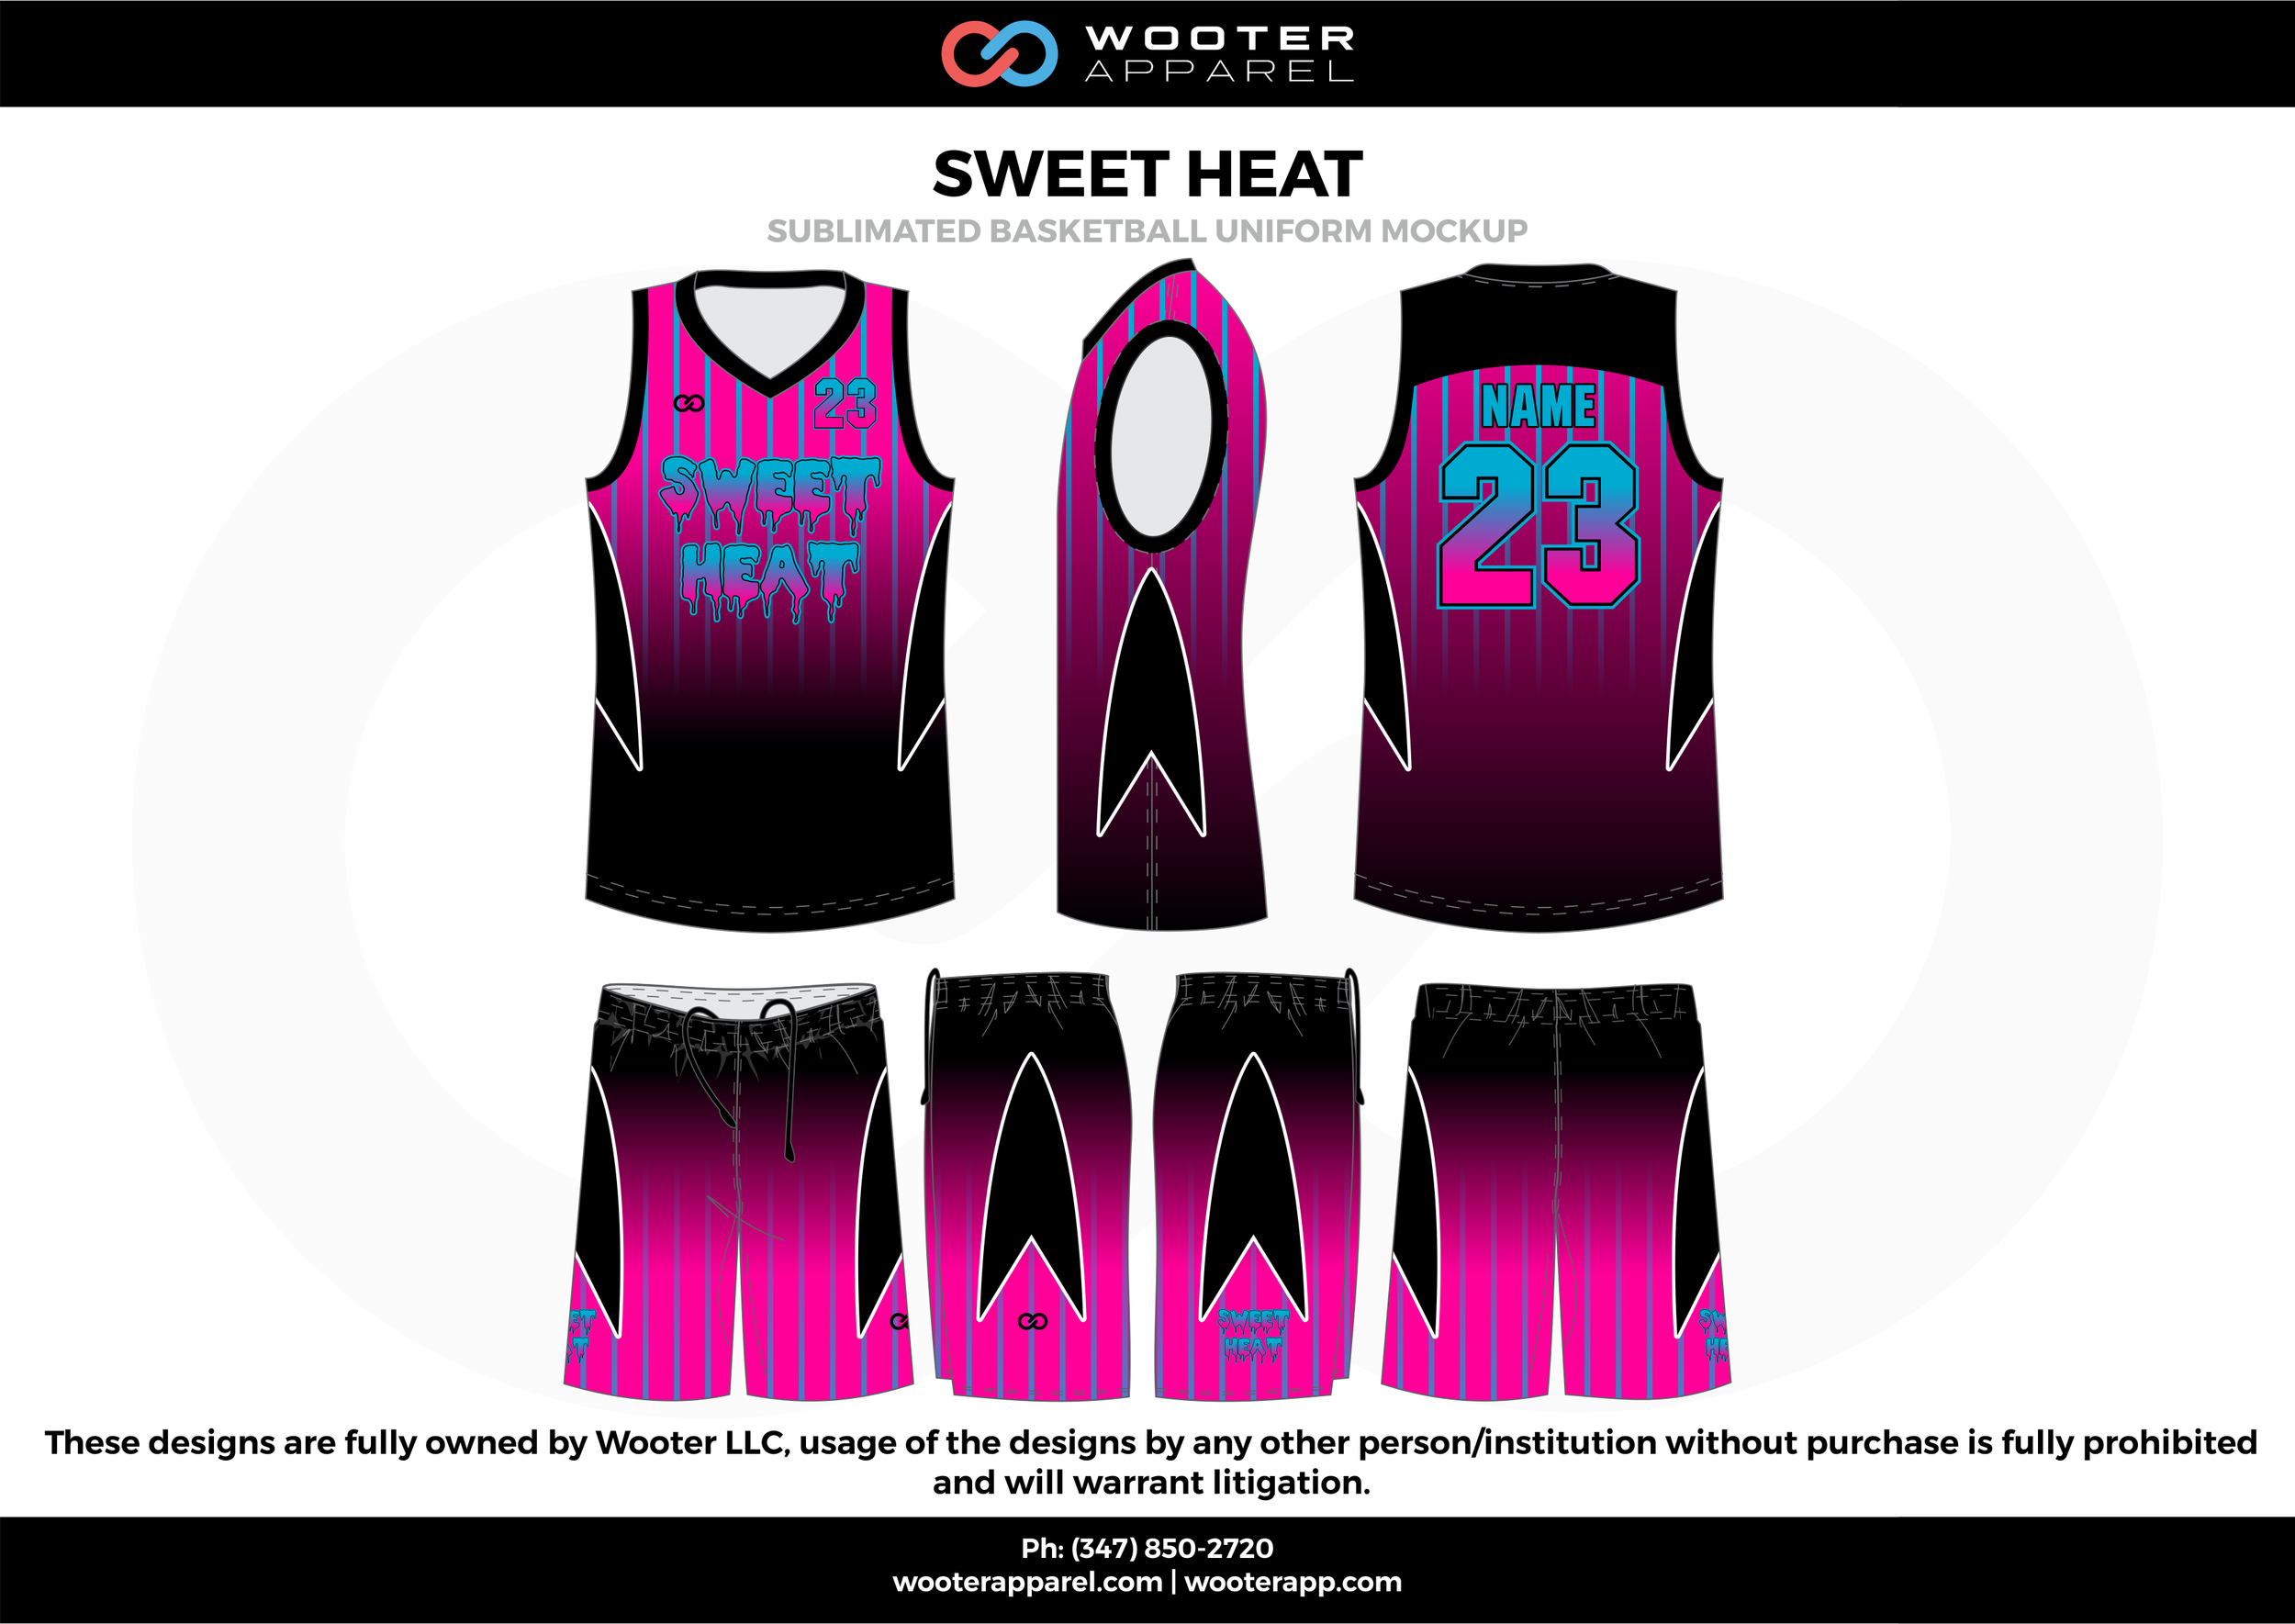 sublimation black pink jersey design